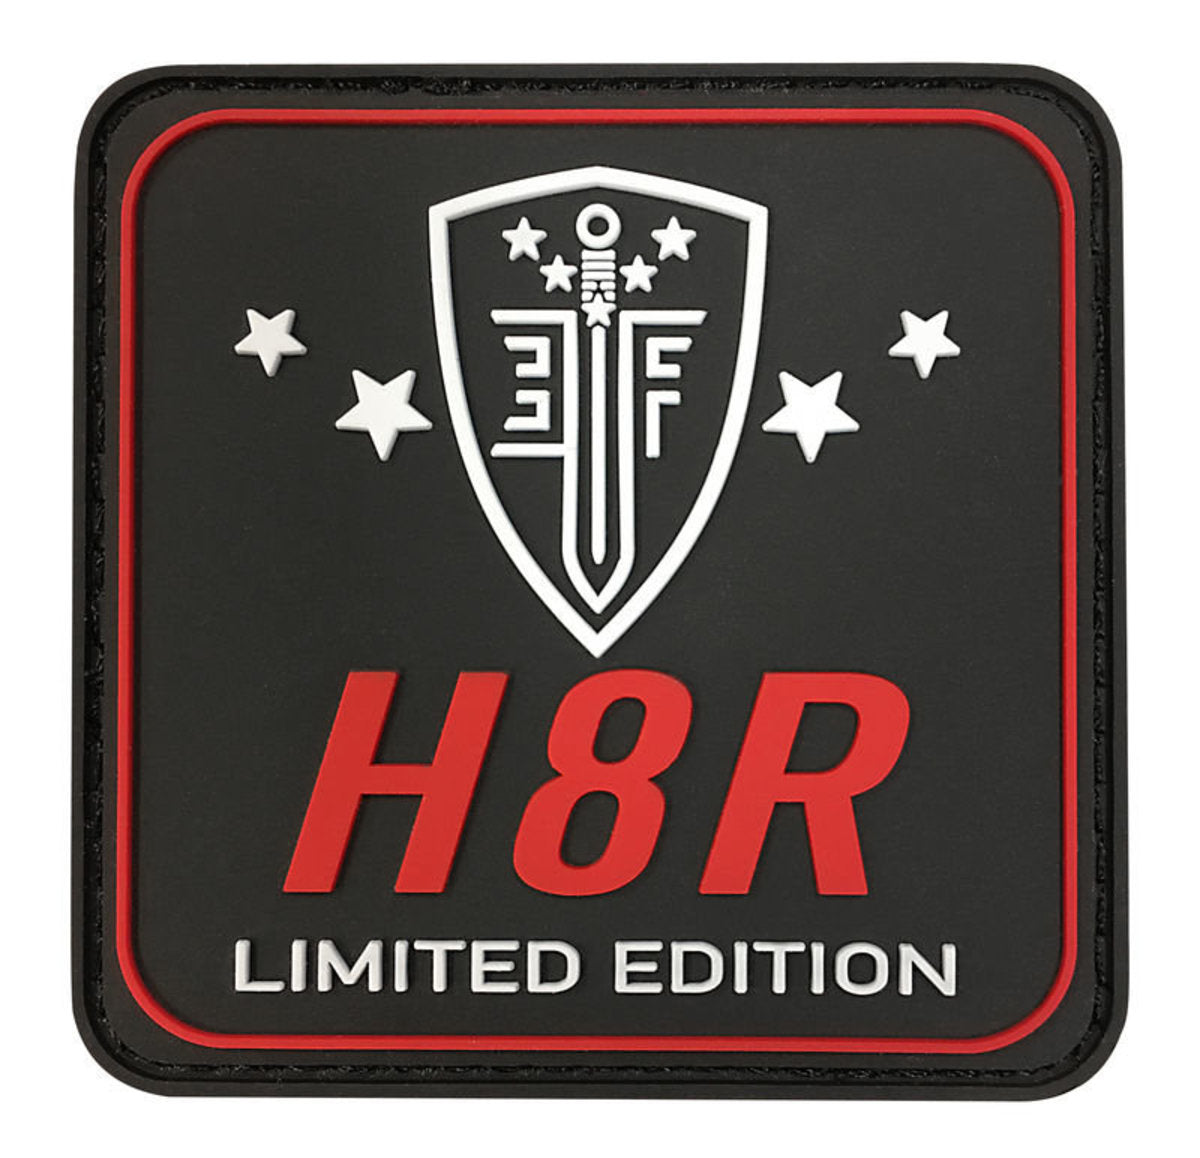 Elite Force H8R Gen2 C02 Revolver - Limited Edition Red/Black